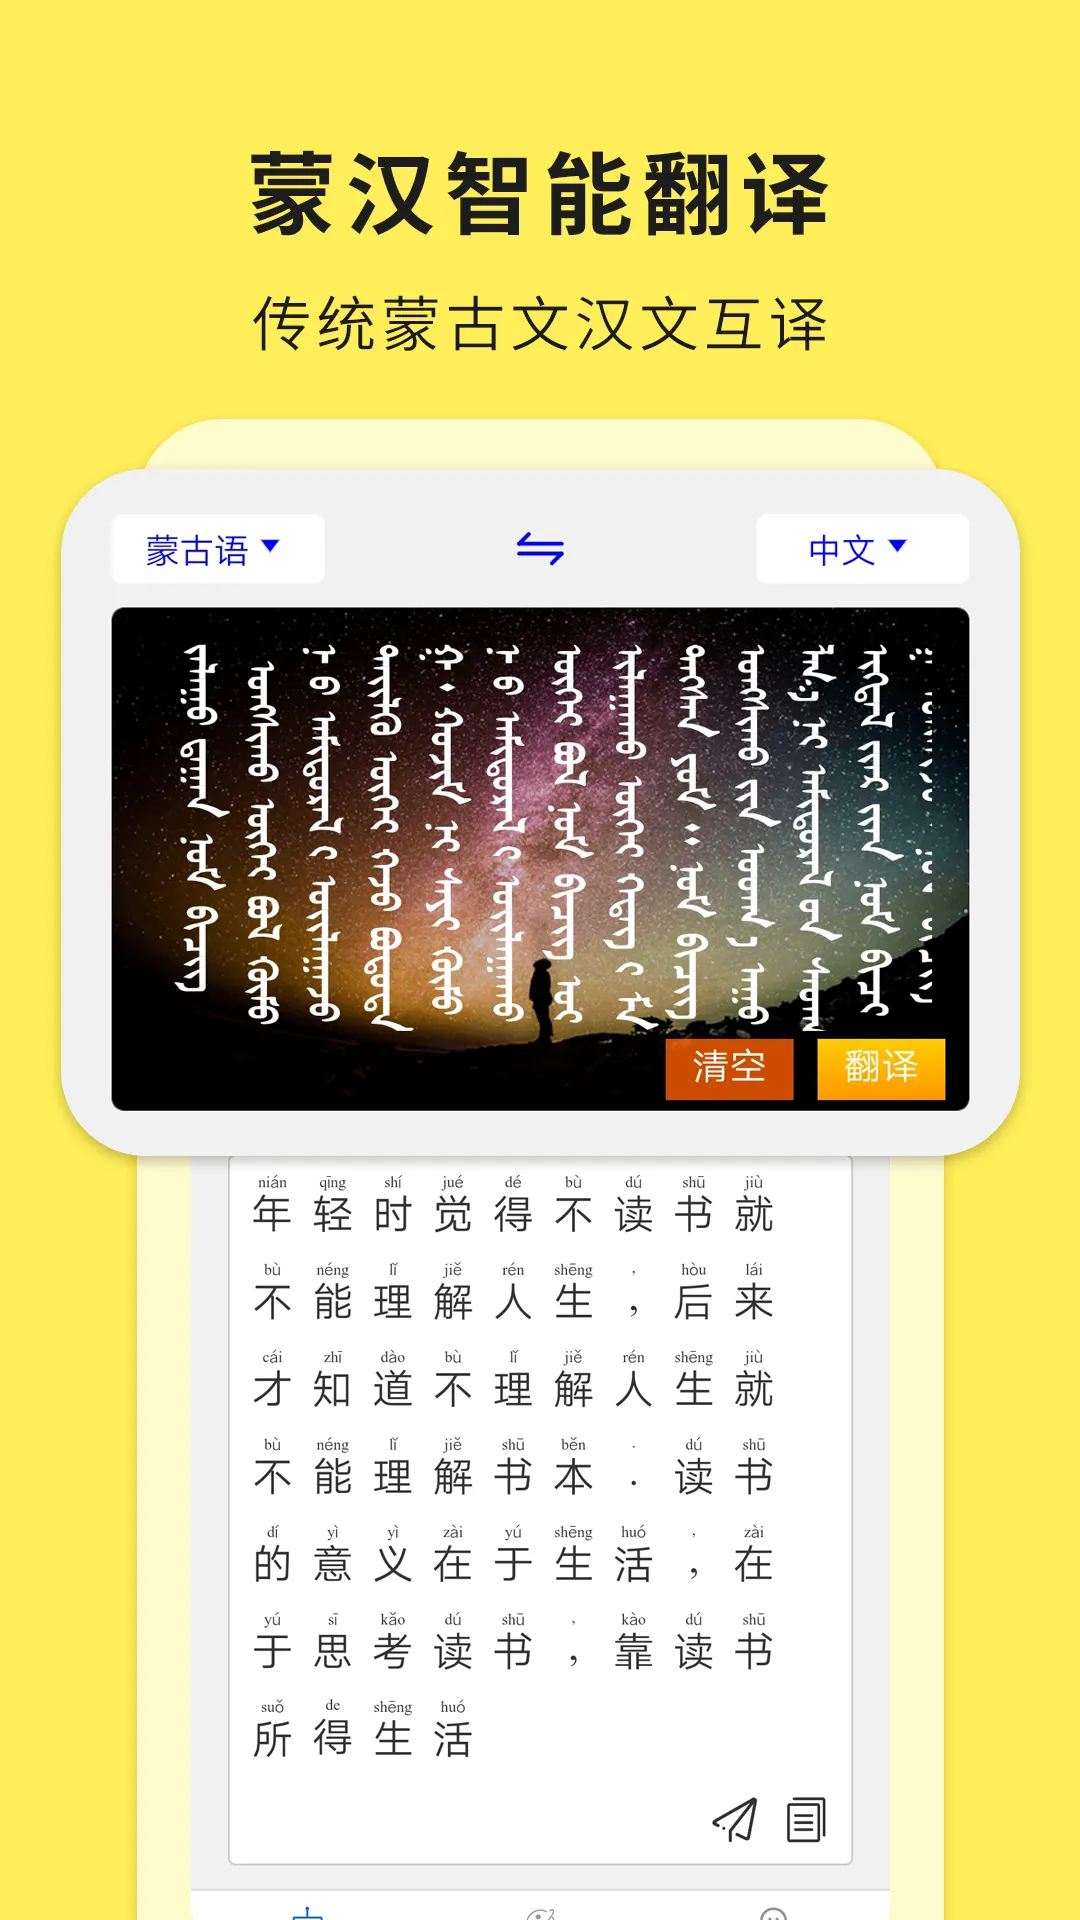 蒙汉翻译通最新版本 v3.3.2 官方安卓版 3